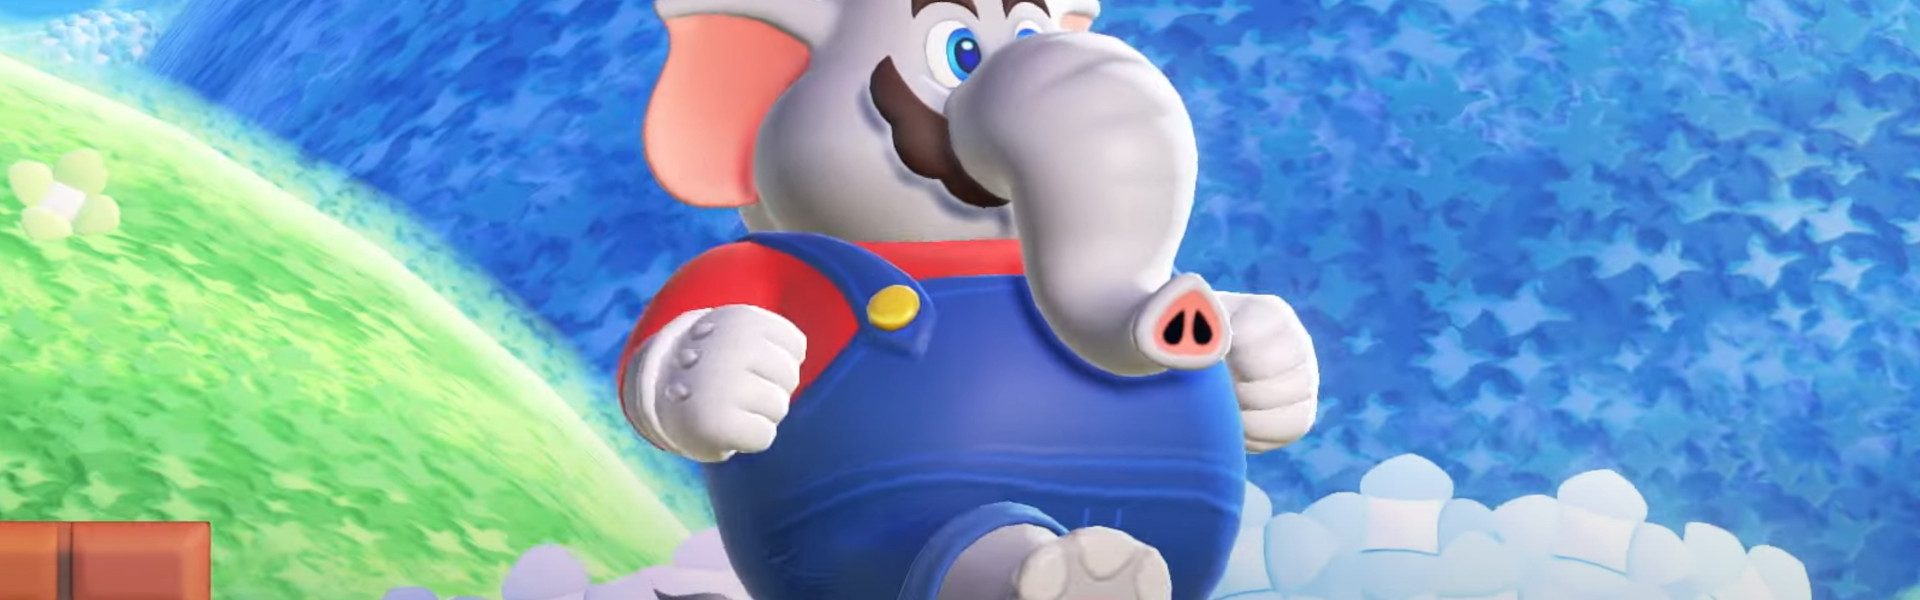 Data premiery Super Mario Bros. Wonder to „ostatnia rzecz” Nintendo